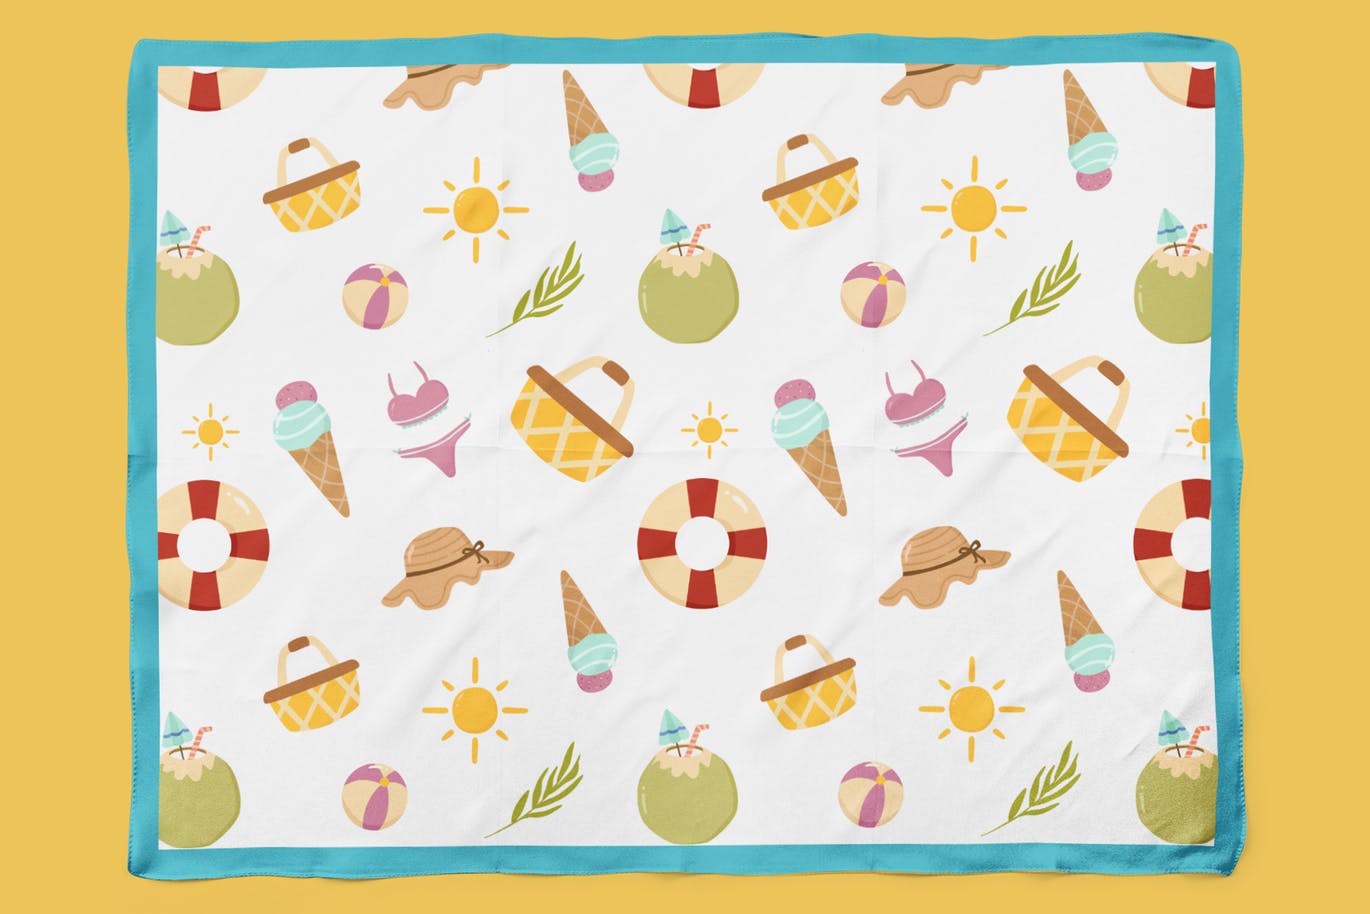 夏日缤纷元素手绘图案无缝背景素材 Playful Summer Seamless Patterns插图(3)